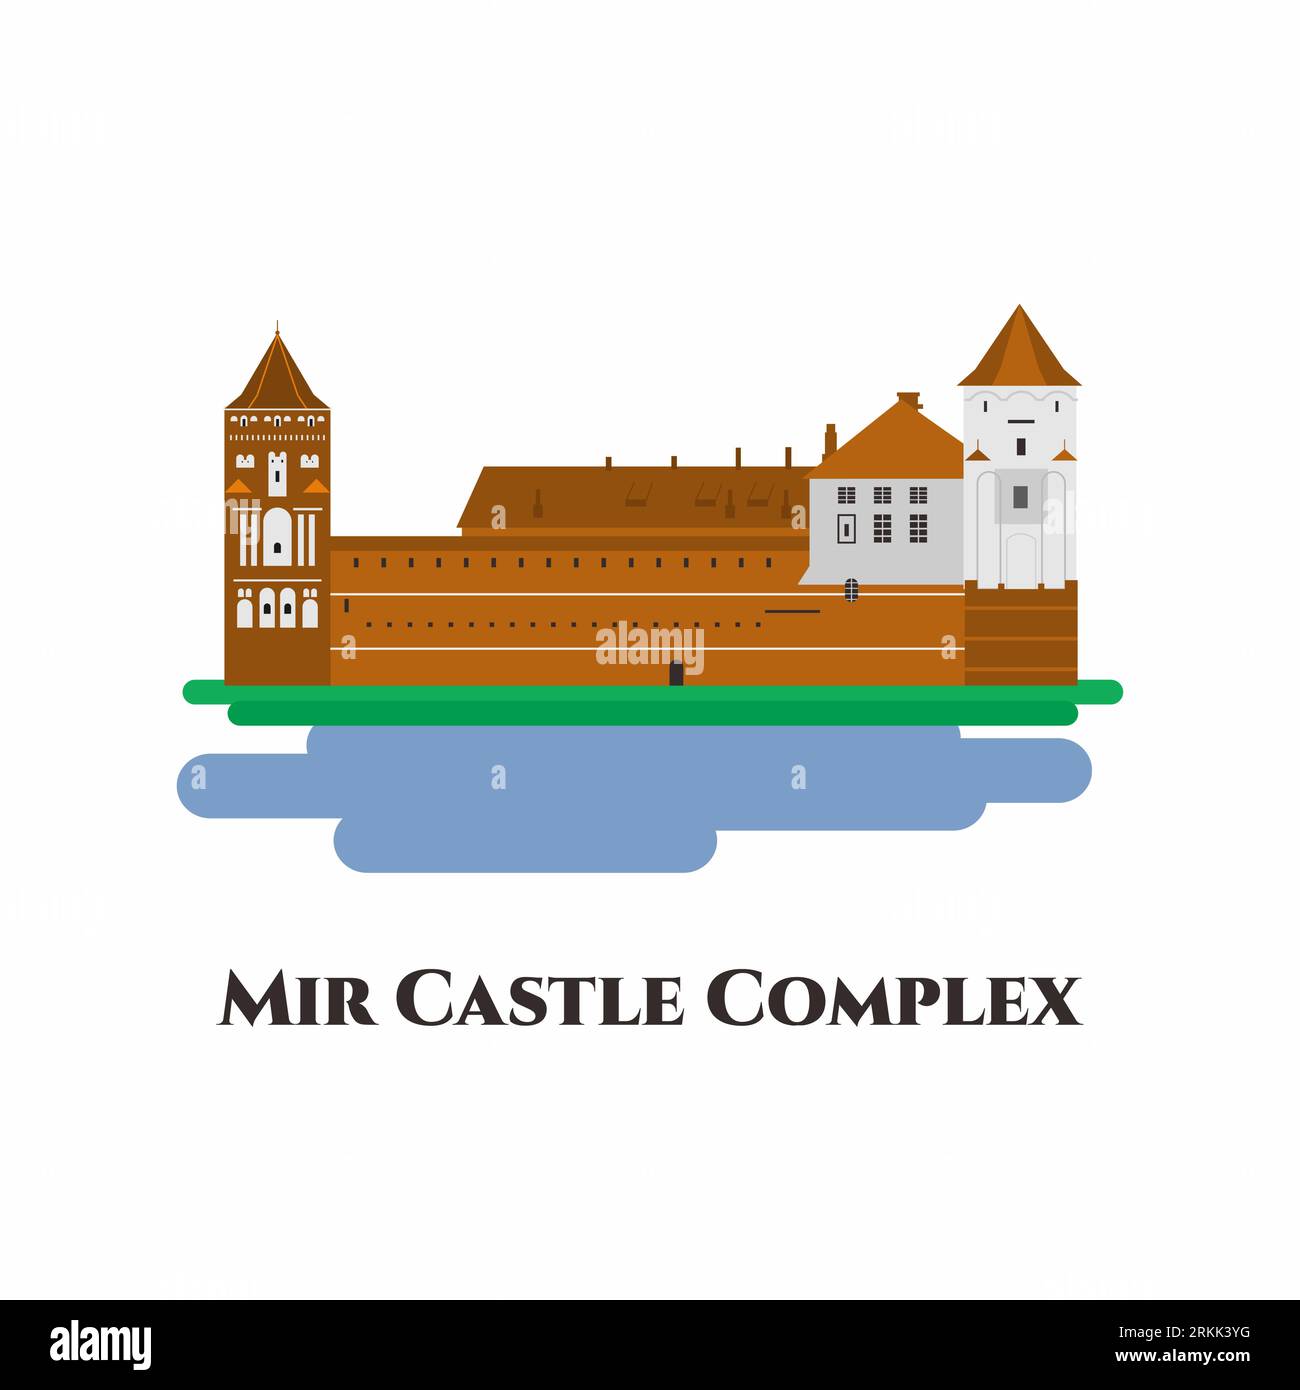 Icône plate du château de Mir. Le complexe du château de Mir est un château fort historique classé au patrimoine mondial de l'UNESCO en Biélorussie. Magnifique endroit et definit Illustration de Vecteur